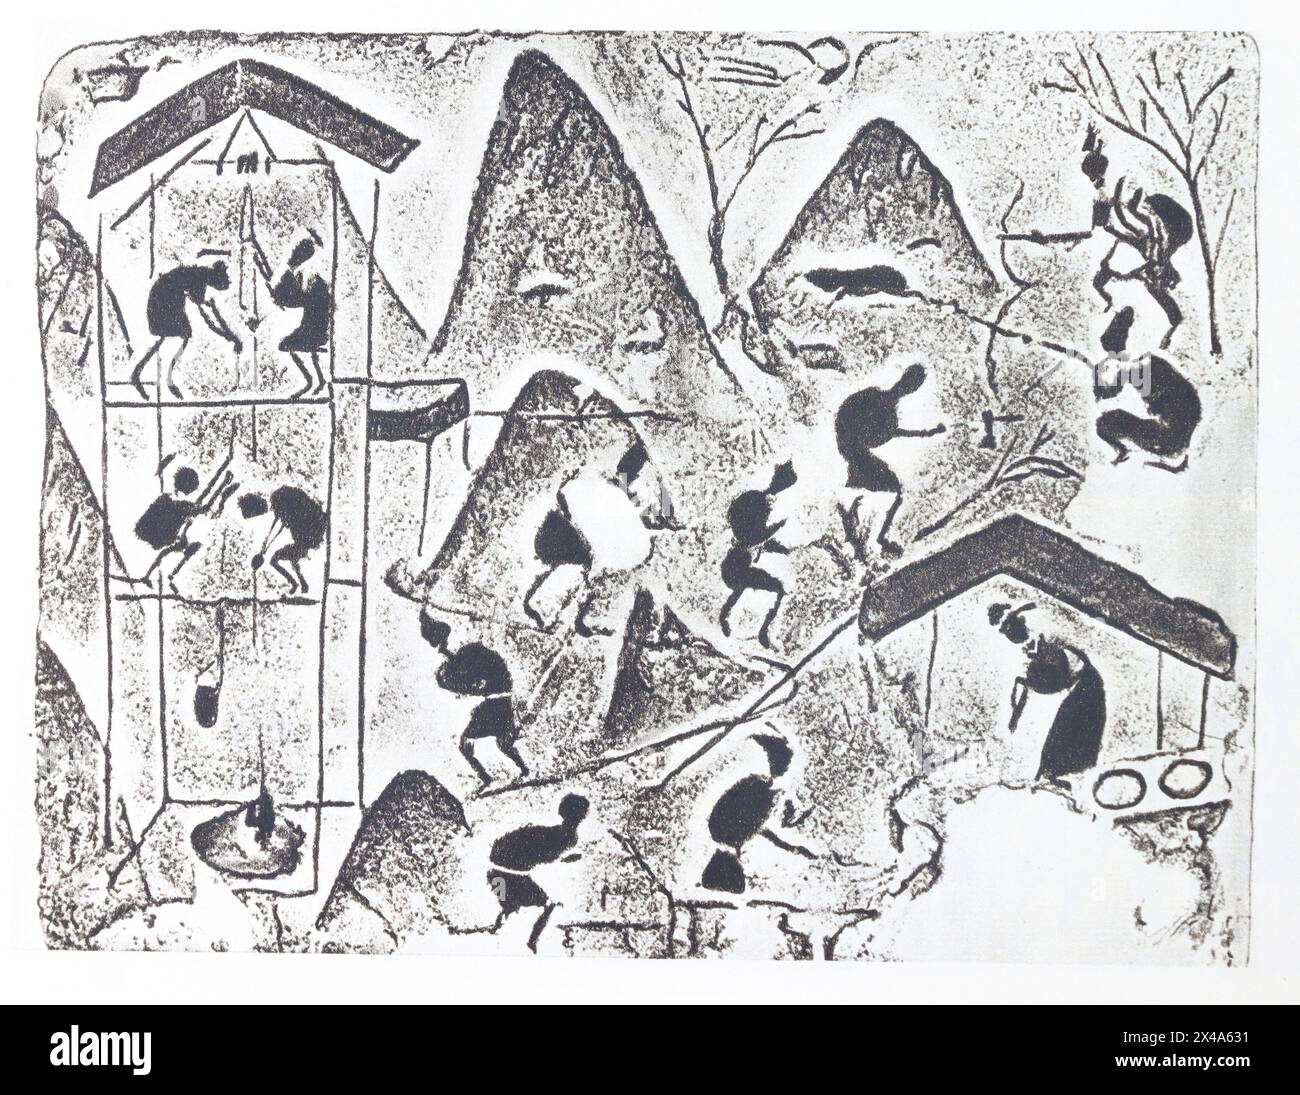 Extraktion von Steinsalz. Relief auf Ziegeln von Han-Gräbern in der chinesischen Provinz Sichuan - 1. Jahrhundert v. Chr. - 1. Jahrhundert n. Chr. Fotografie der ersten Hälfte des 20. Jahrhunderts. Stockfoto